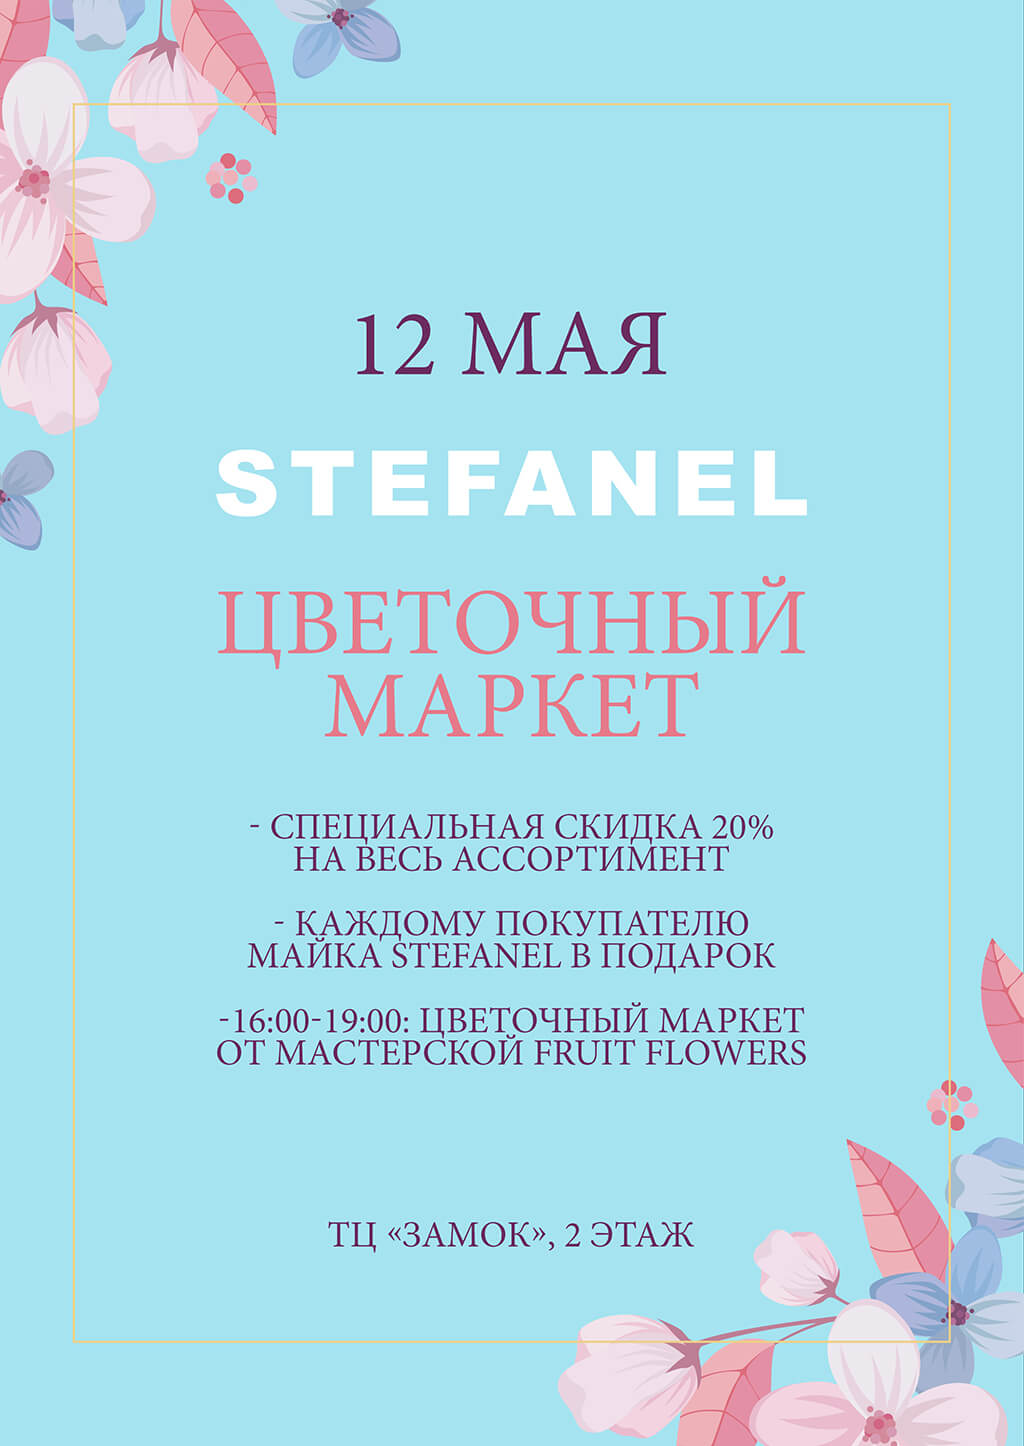 Цветочный маркет Stefanel